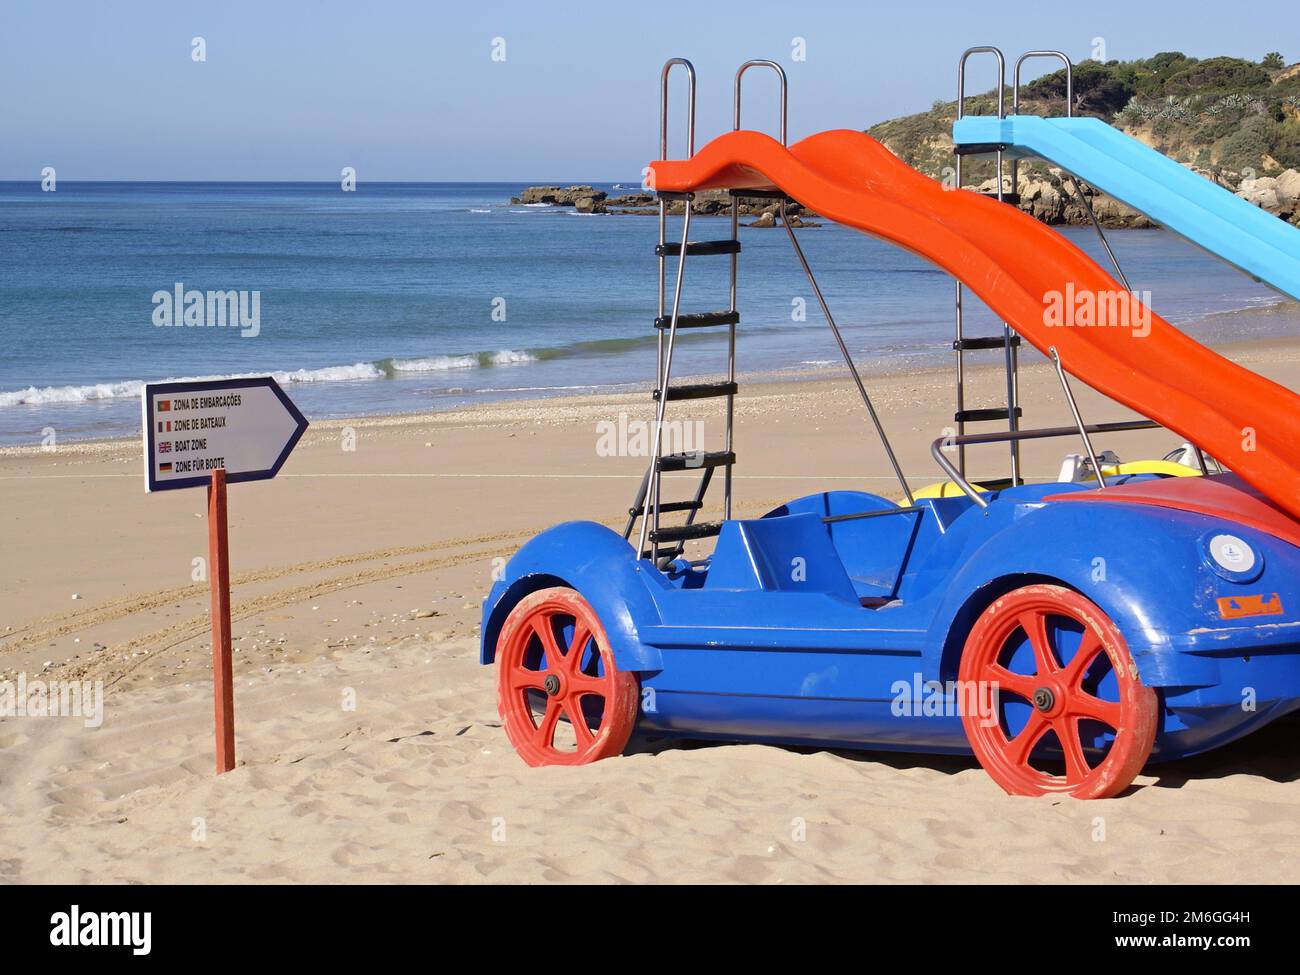 Pédalos amusants en forme de voiture sur la plage d'Albufeira, Algarve - Portugal Banque D'Images